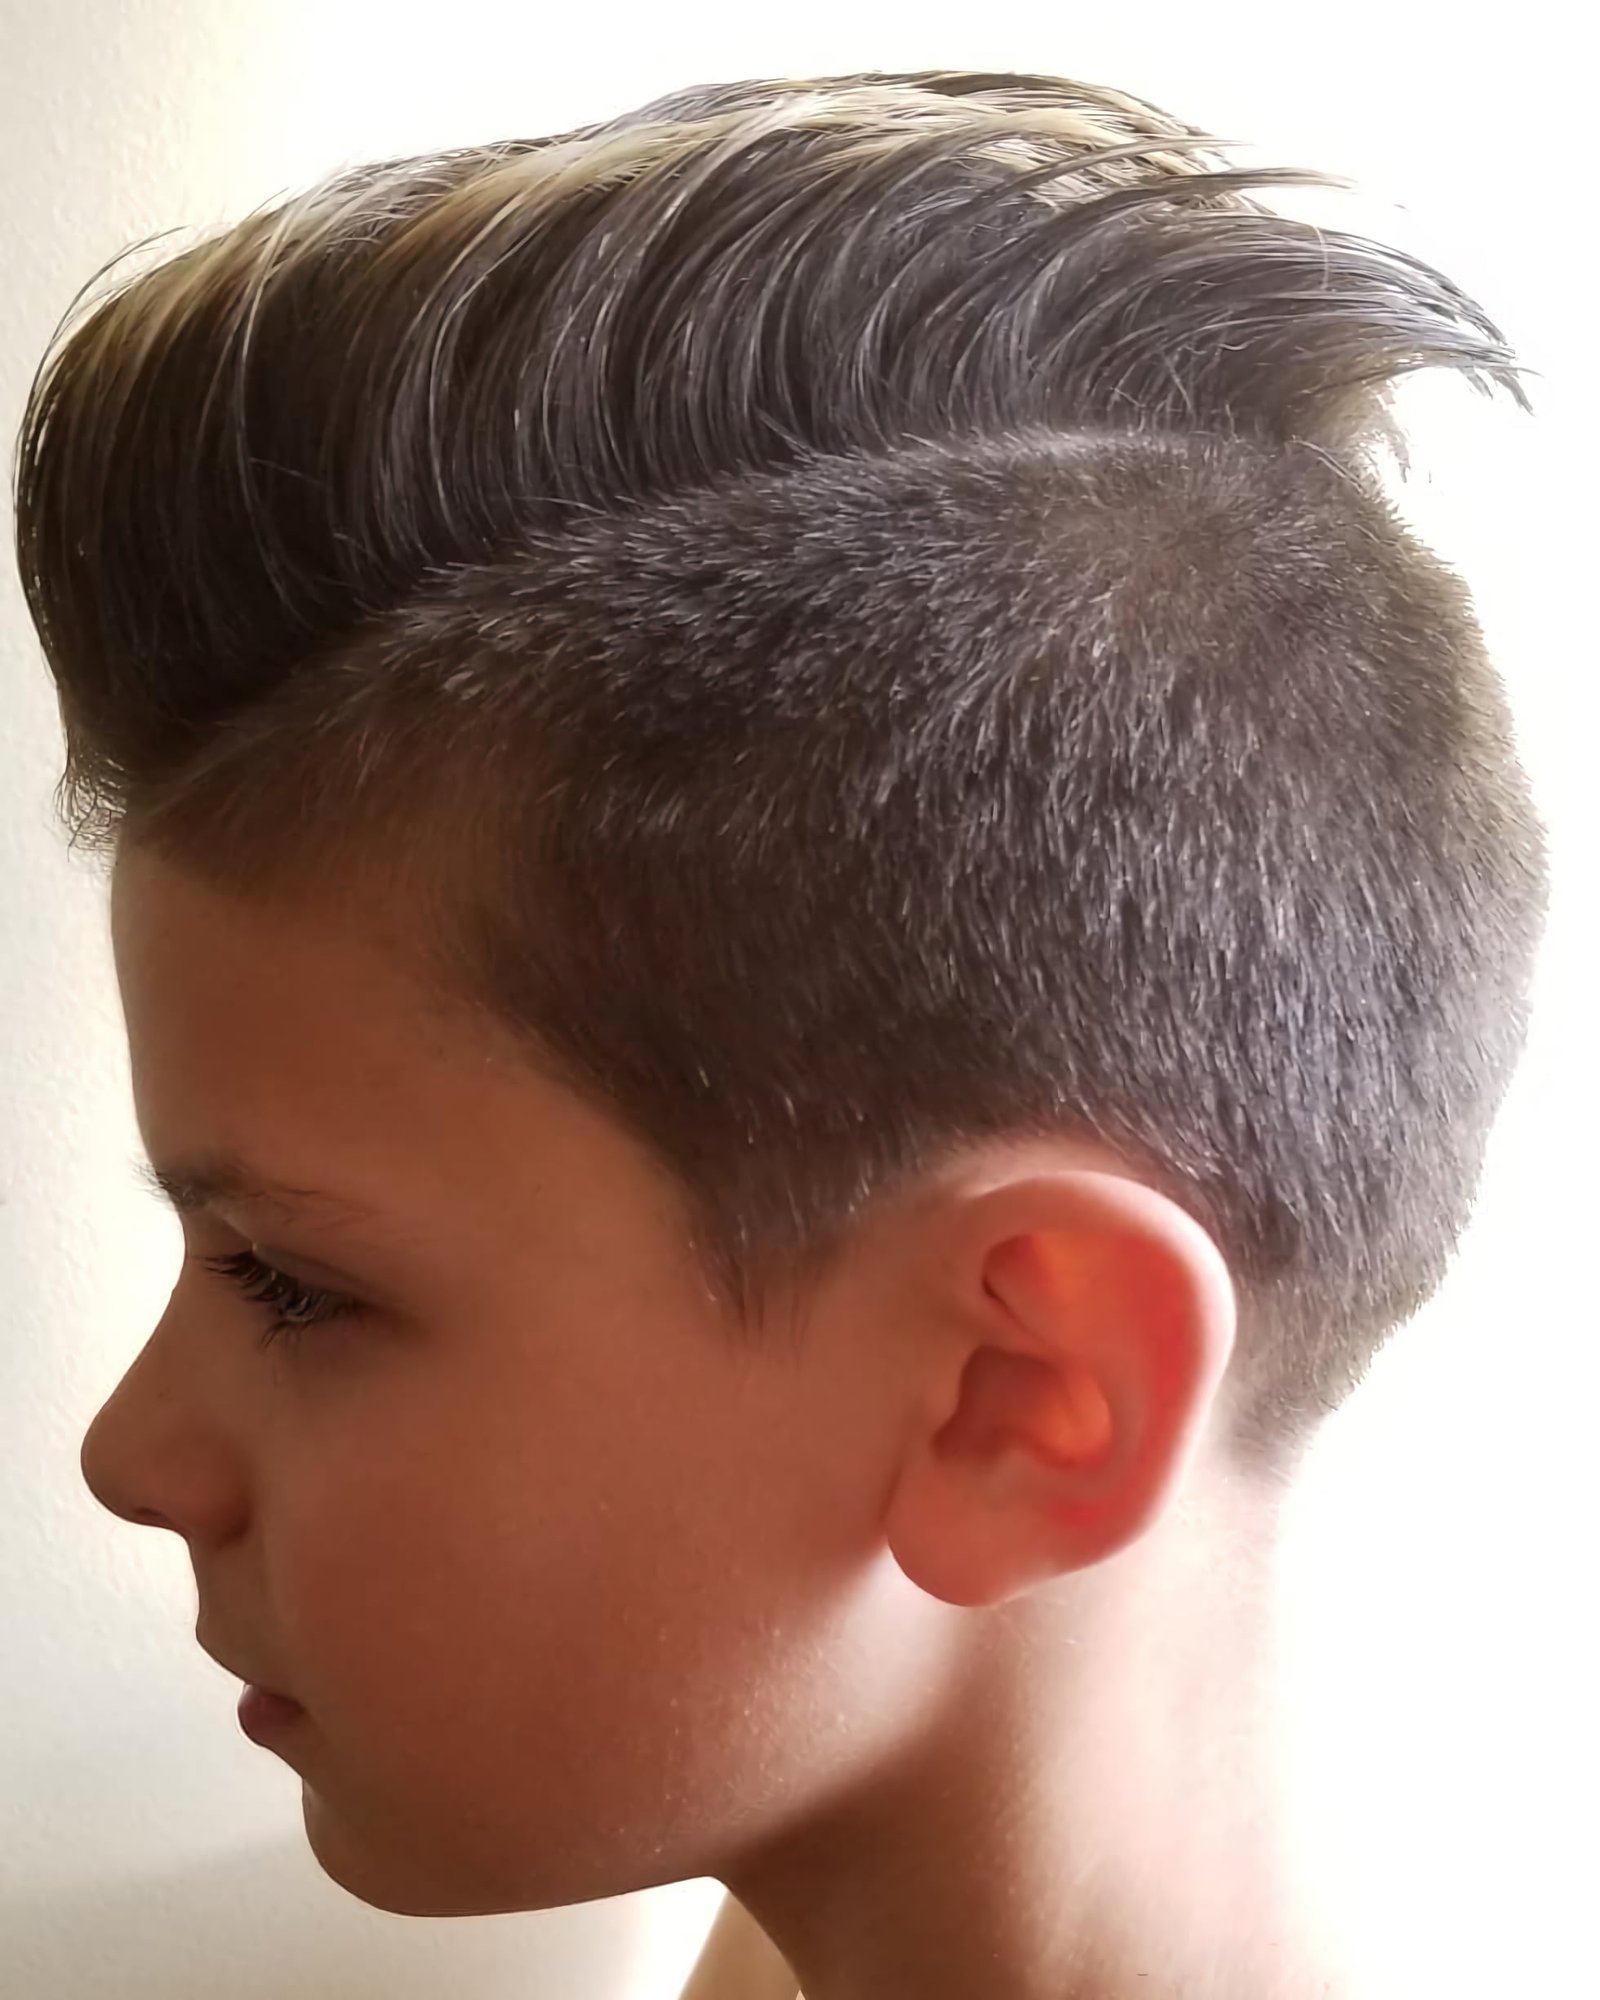 Super Sonic haircut